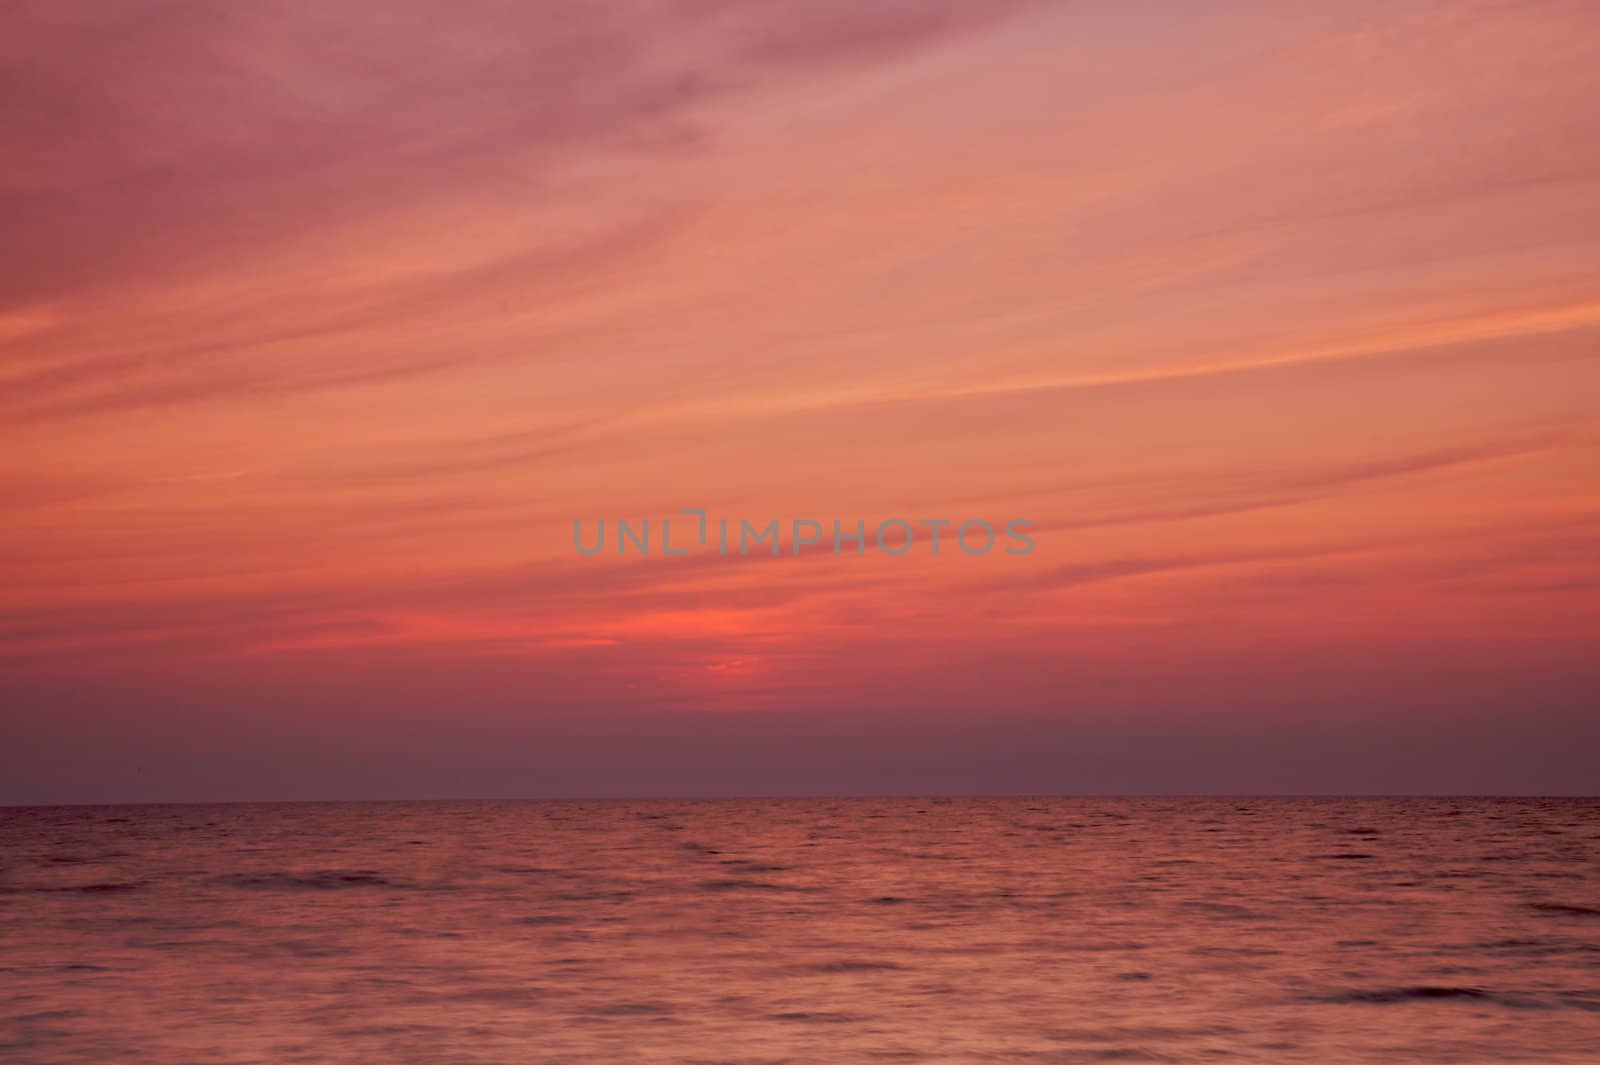 Lake Michigan Sunset by bobkeenan